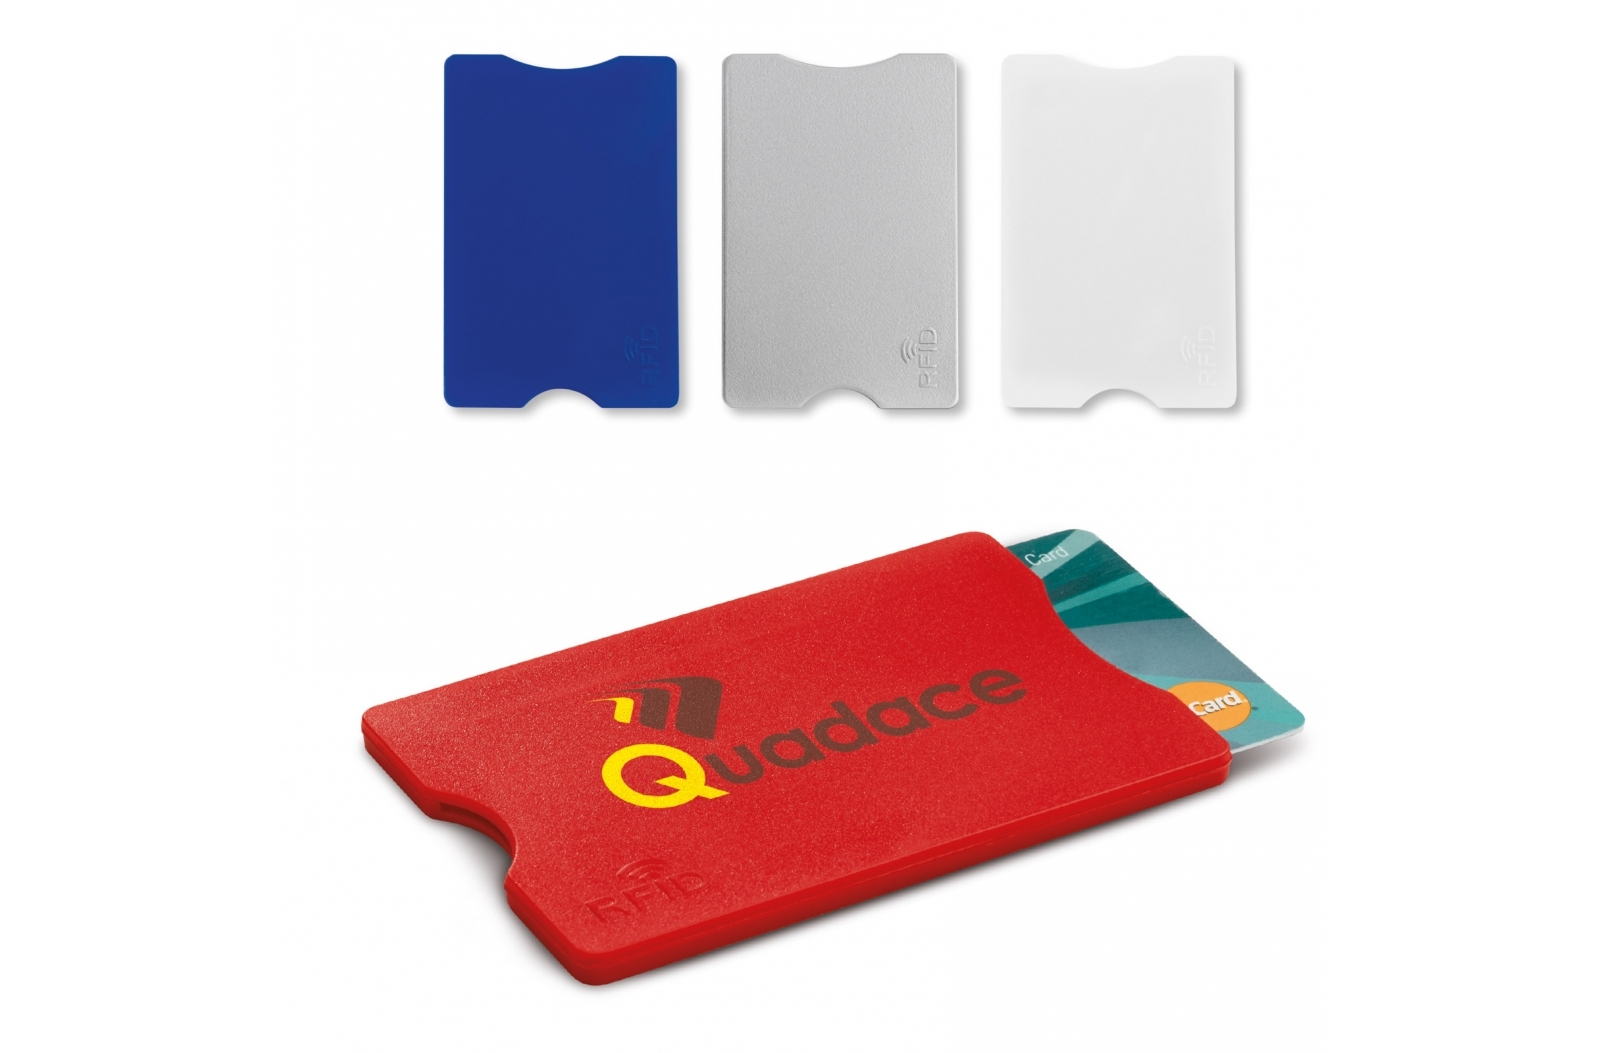 Porte-cartes bancaire anti-RFID (étui en plastique rigide) - Zaprinta France